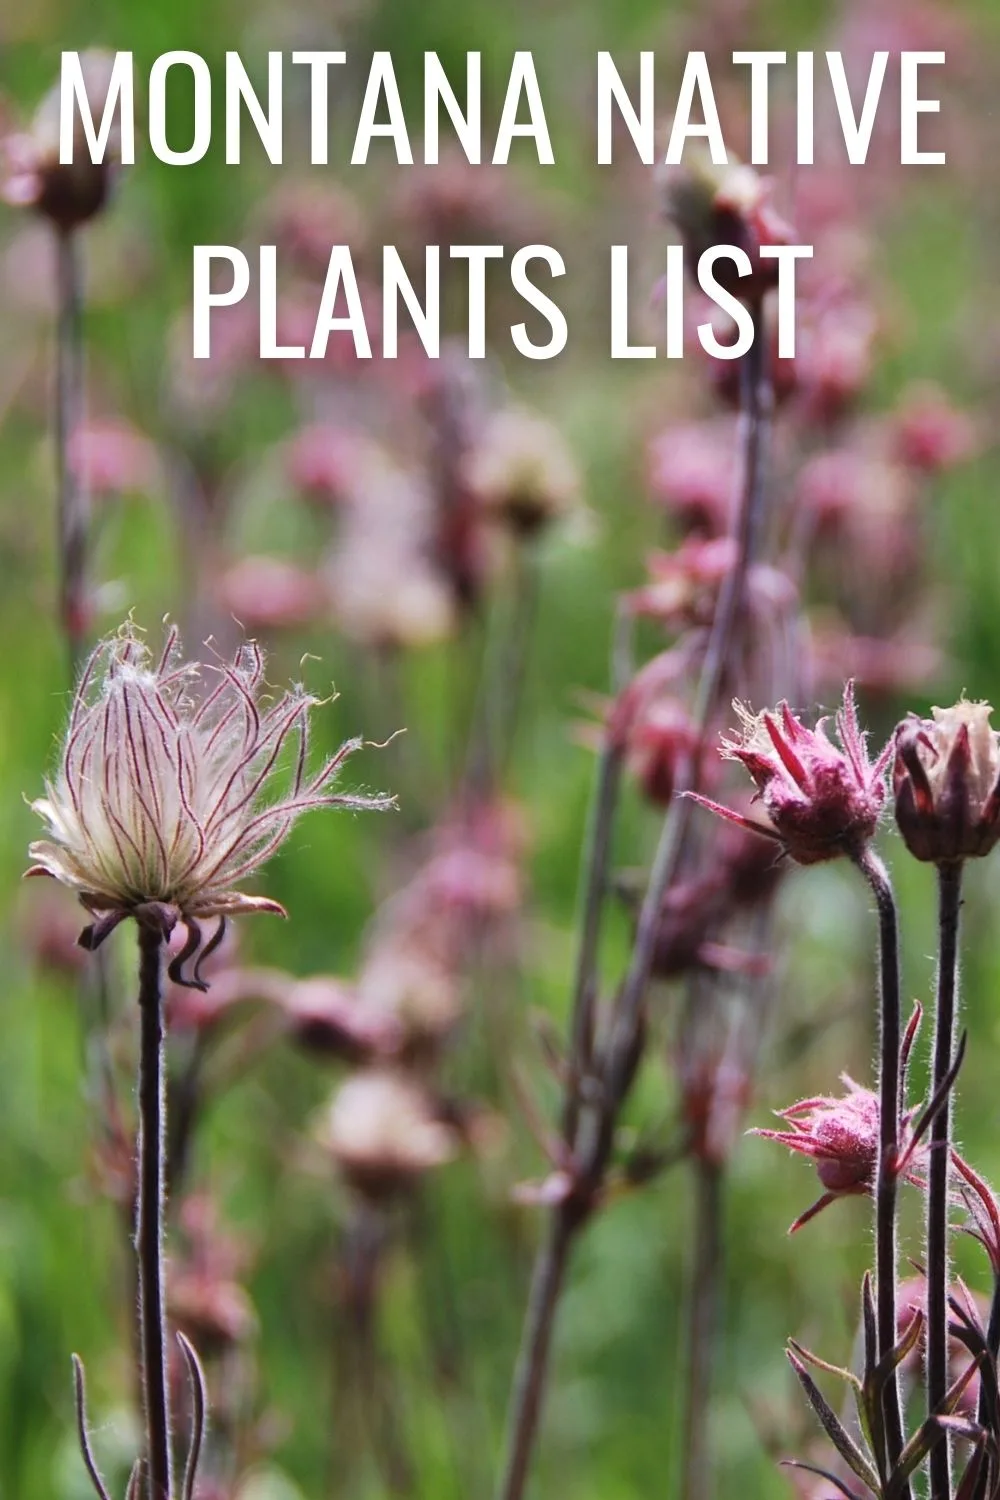 Montana native plants list